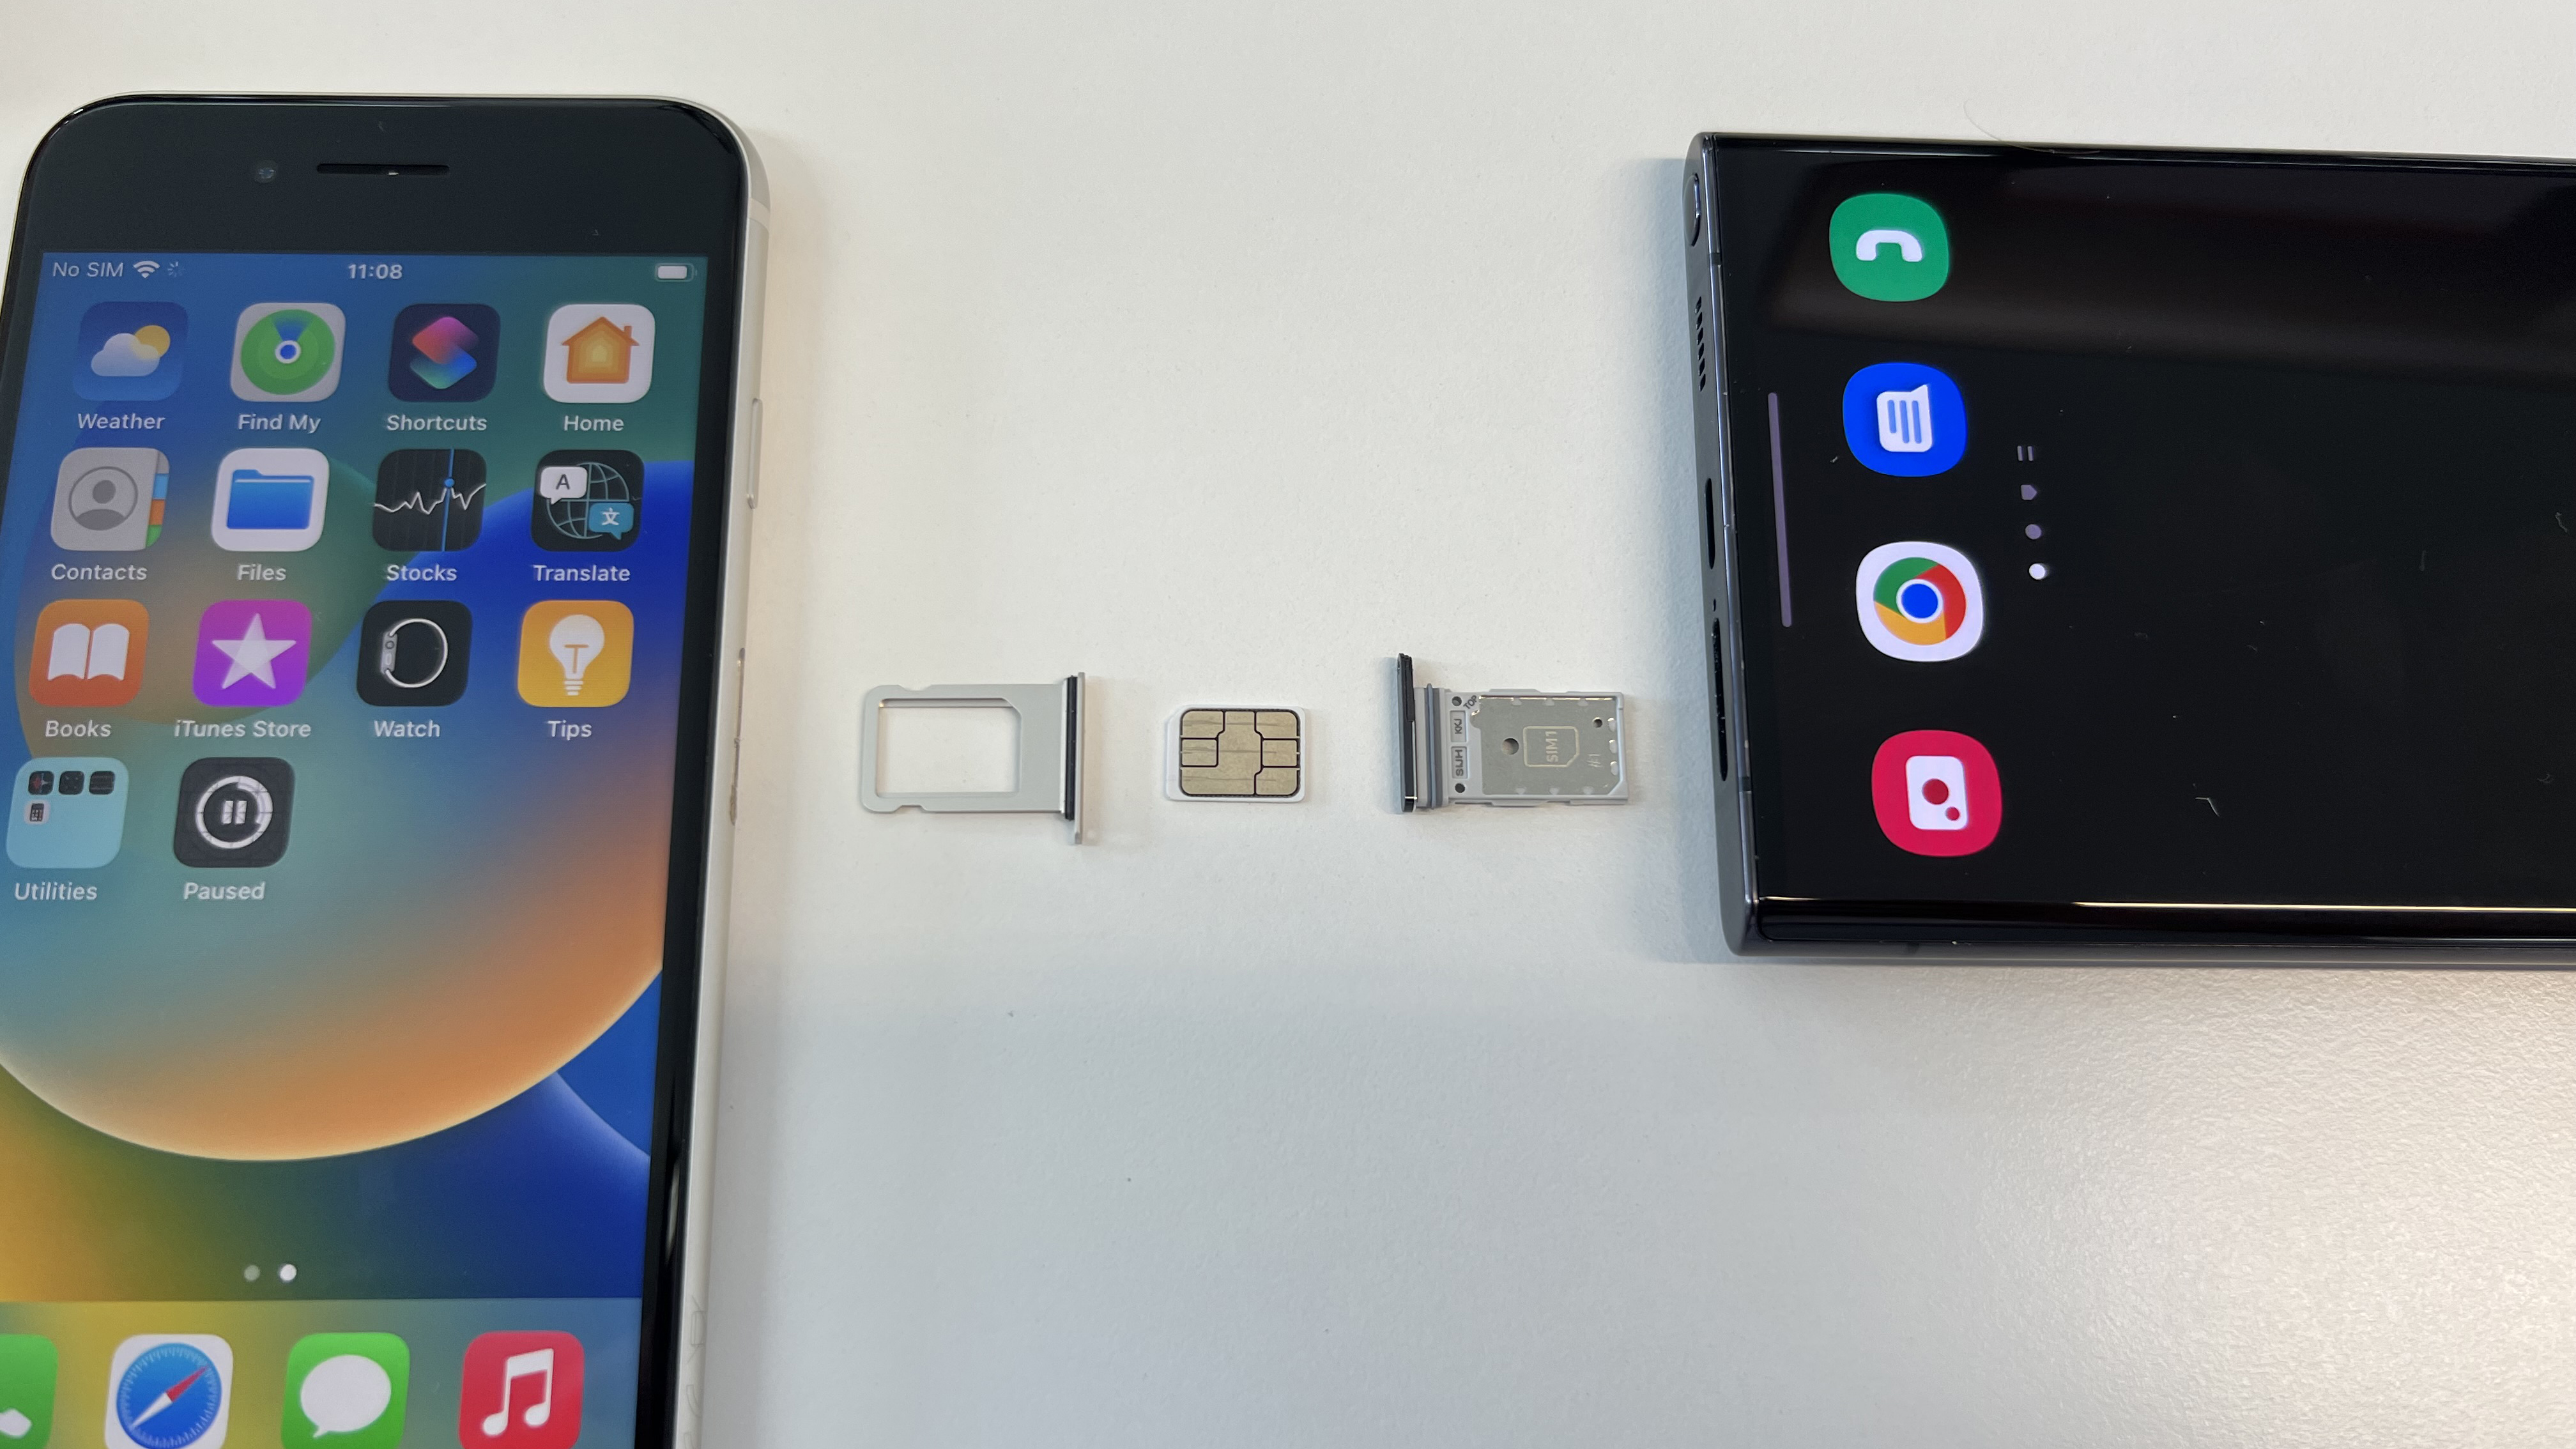 SIM tepsileri çıkarılmış ve aralarına nano SIM kart yerleştirilmiş bir iPhone SE 2022 ve Samsung Galaxy S22 Ultra